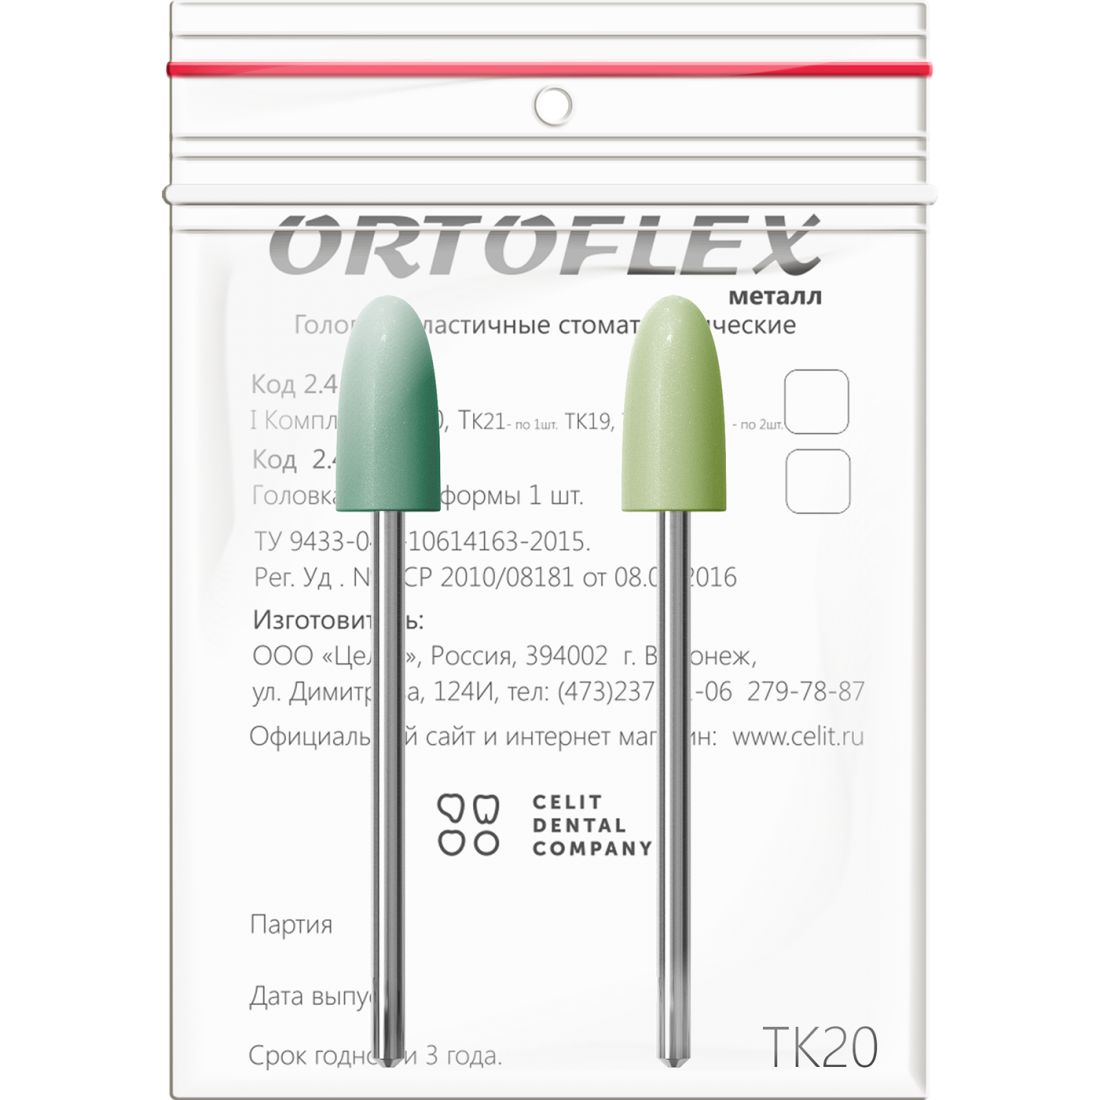 Ortoflex пластмасса ТК20, головки Ортофлекс для обработки пластмассы (2шт)